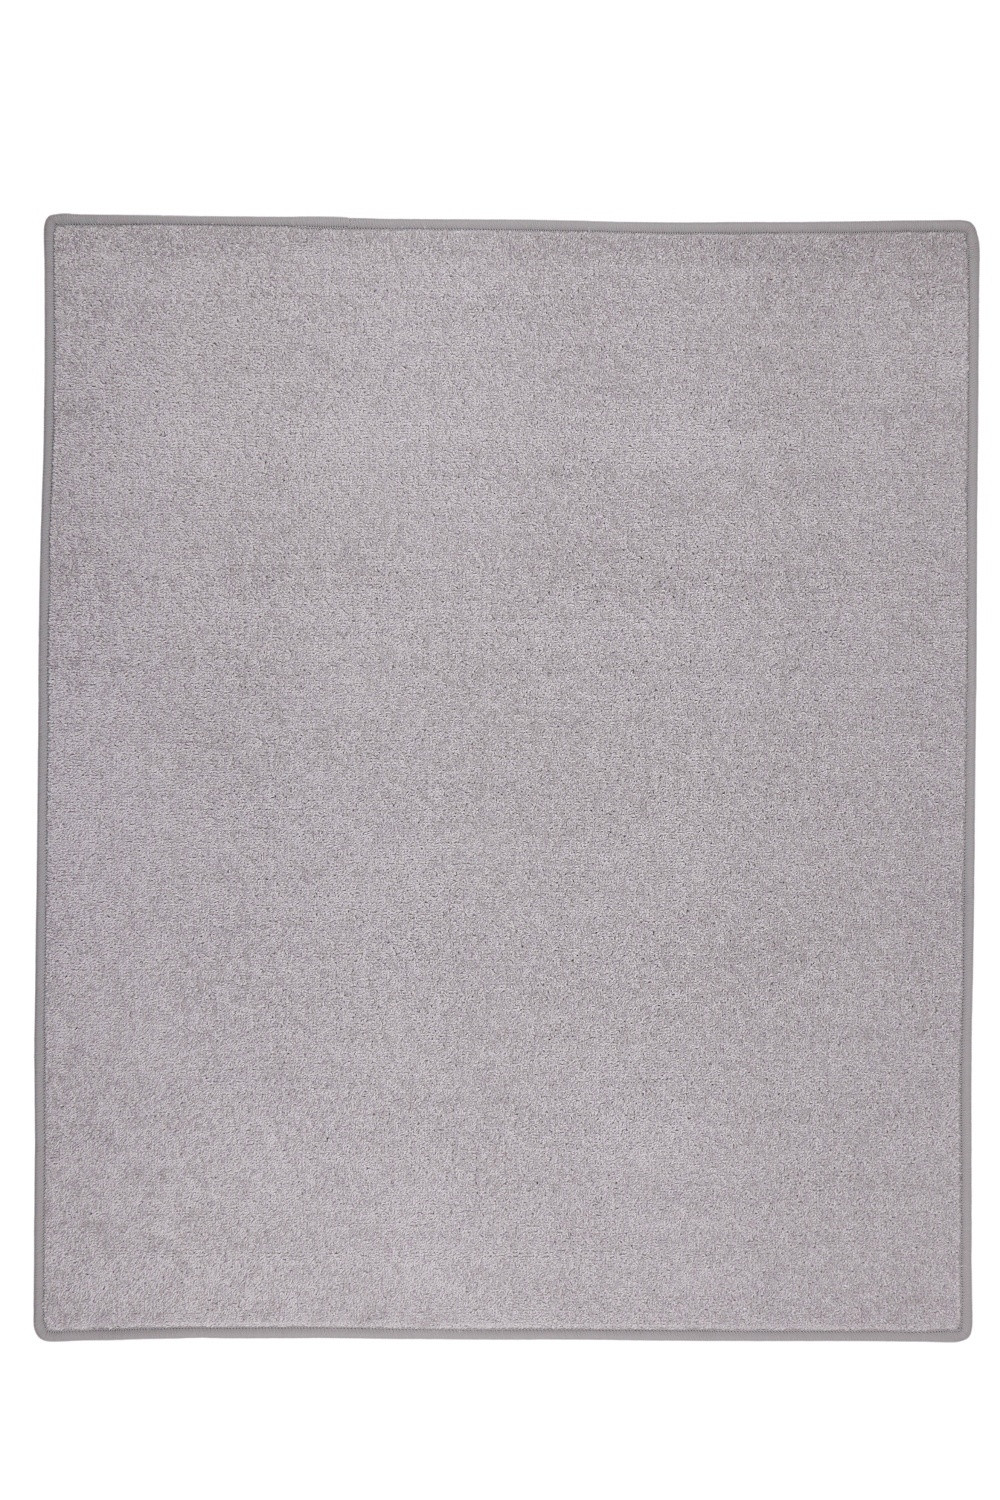 Kusový koberec Eton sivý 73 - 57x120 cm Vopi koberce 